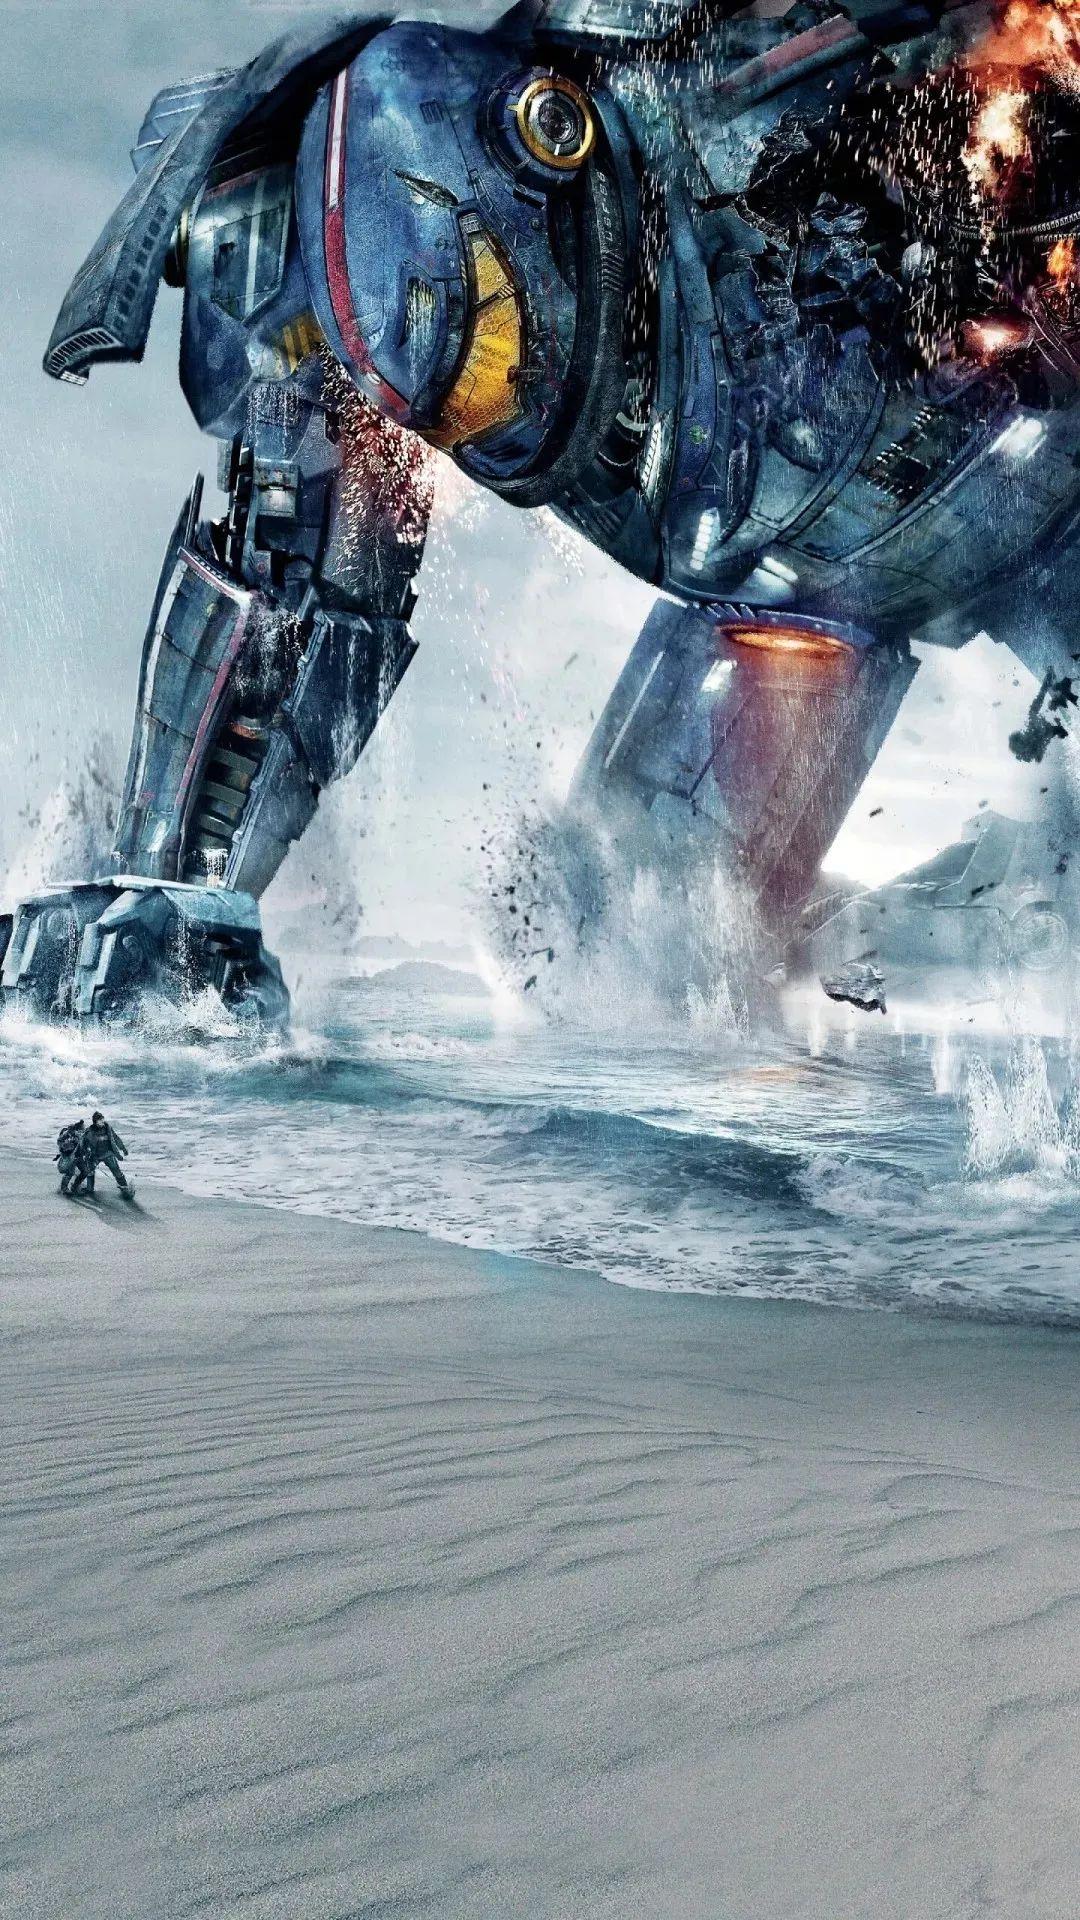 《环太平洋2》曝概念图,机甲武装大升级,怪兽造型图_综合图库 - 动态图库网